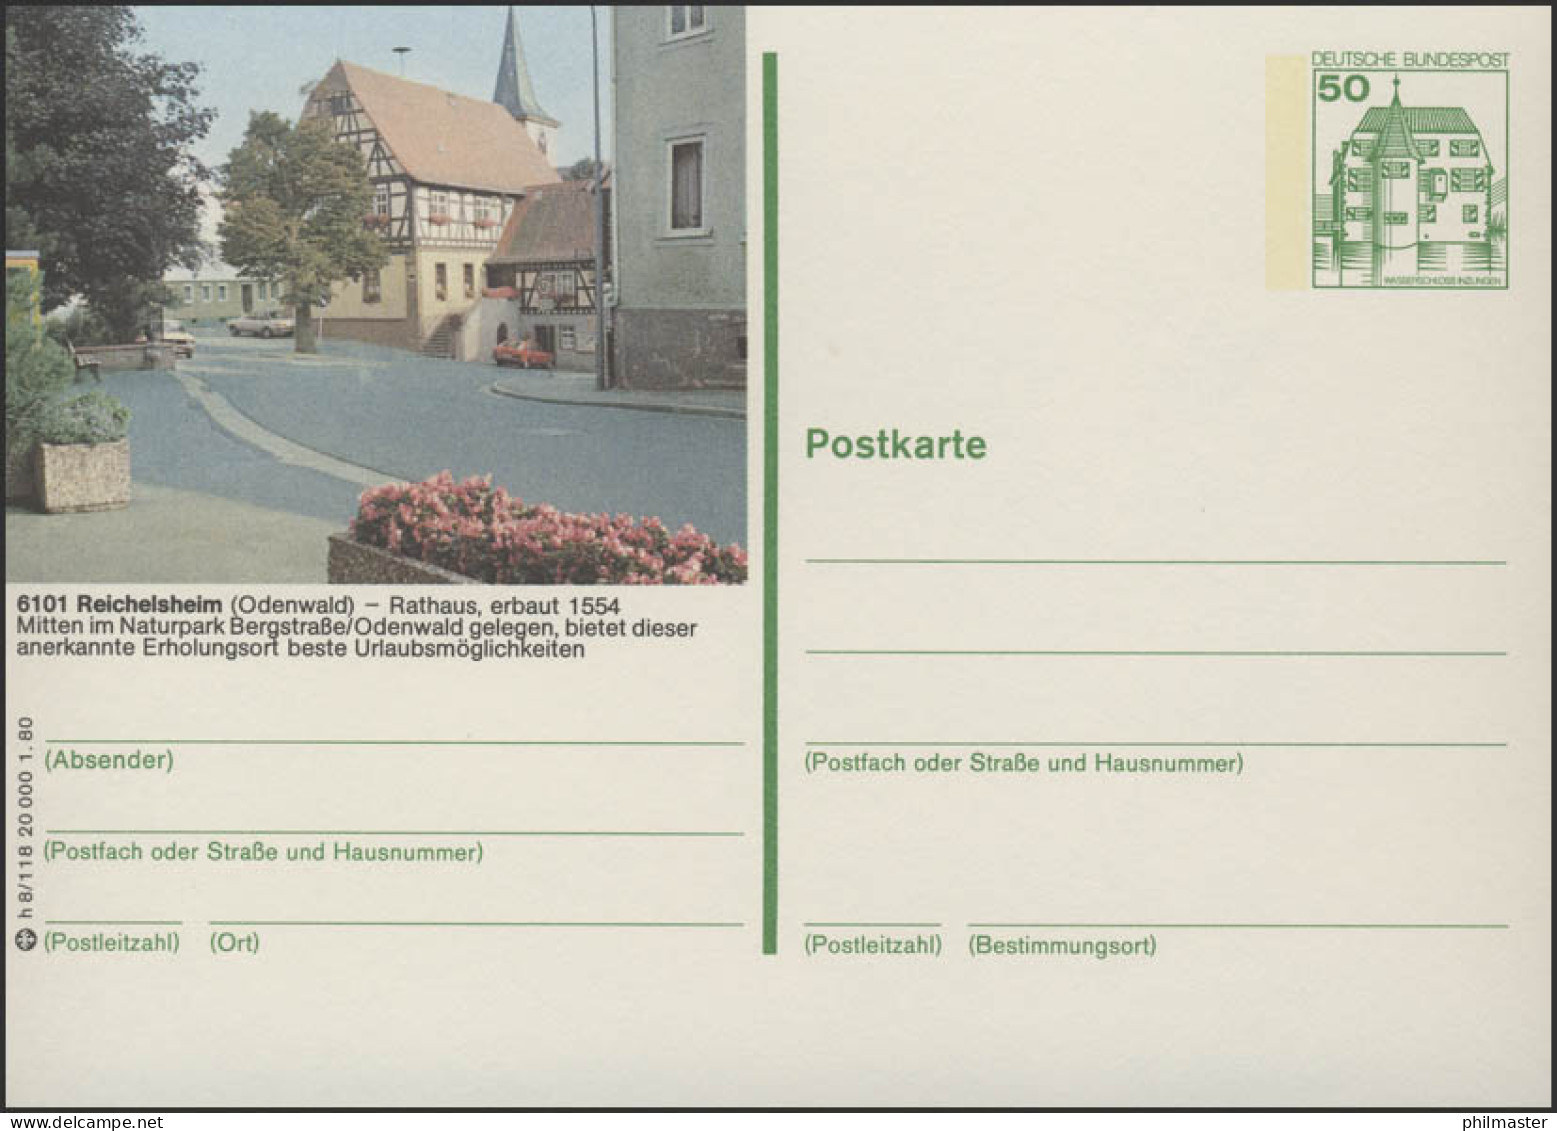 P130-h8/118 - 6101 Reichelsheim, Rathaus ** - Postales Ilustrados - Nuevos